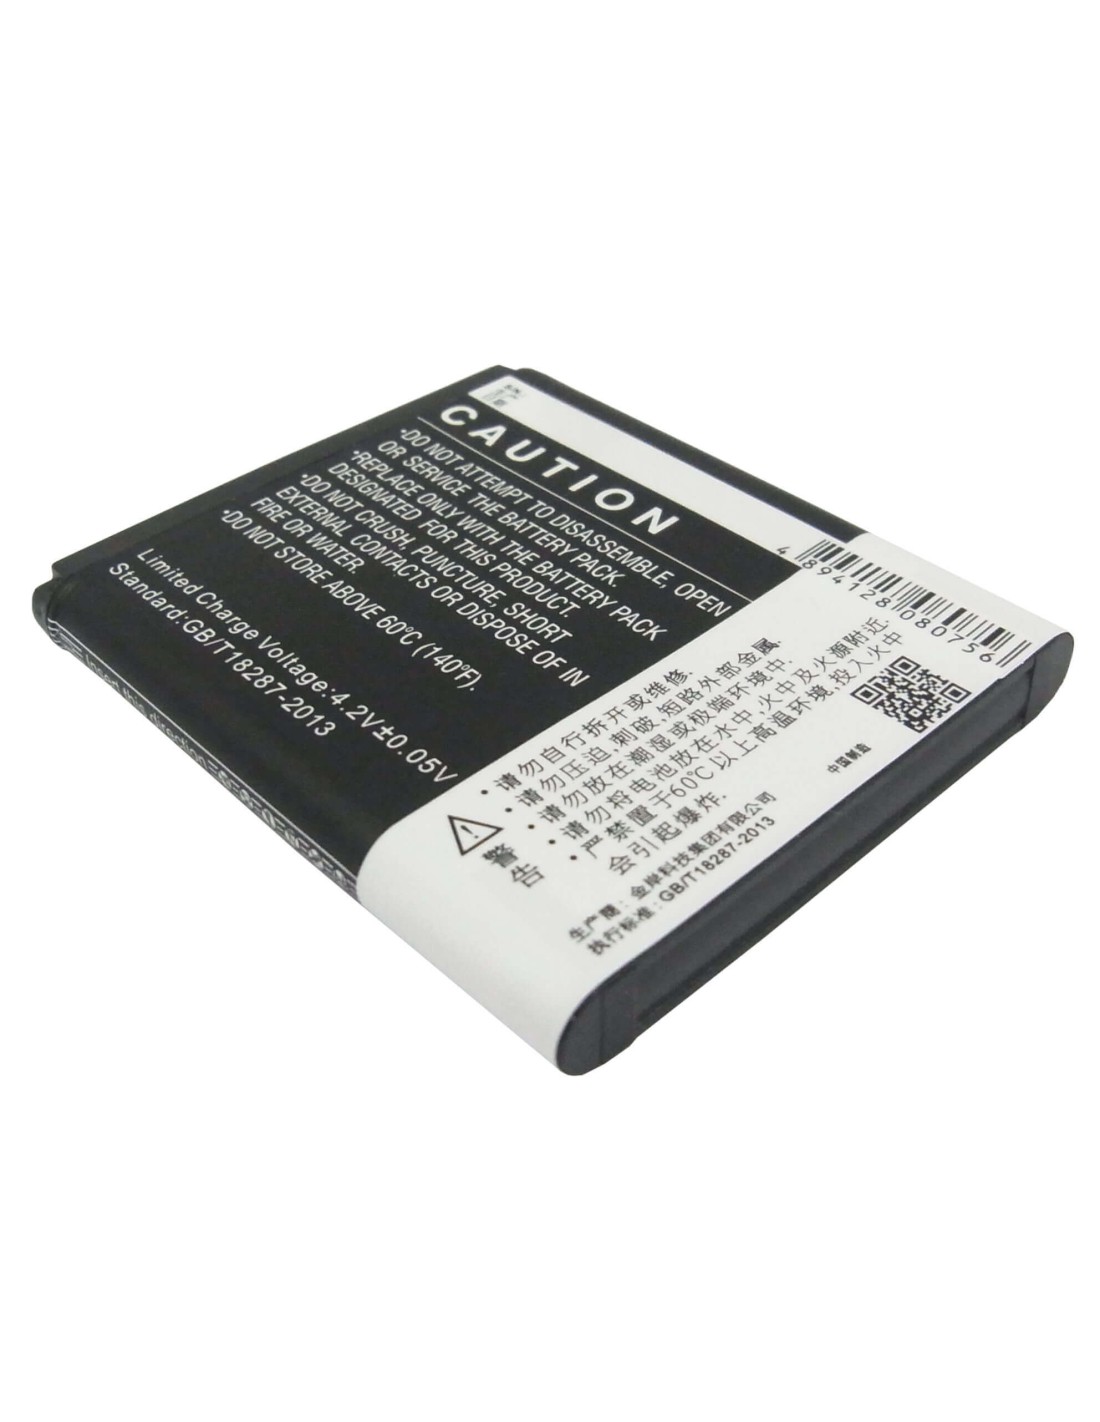 Battery for Lenovo P700, P700i 3.7V, 2500mAh - 9.25Wh